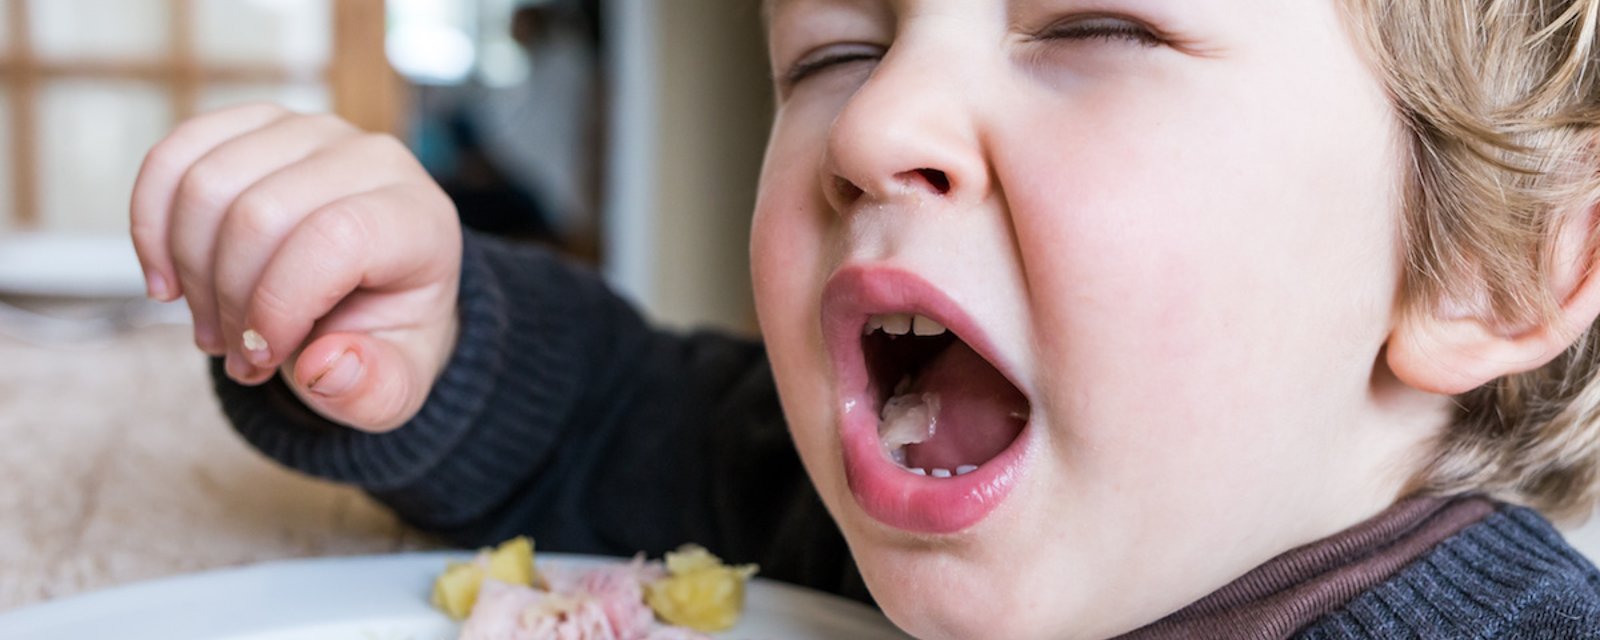 Le fait de manger la bouche ouverte ajoute du goût à la nourriture, selon la science